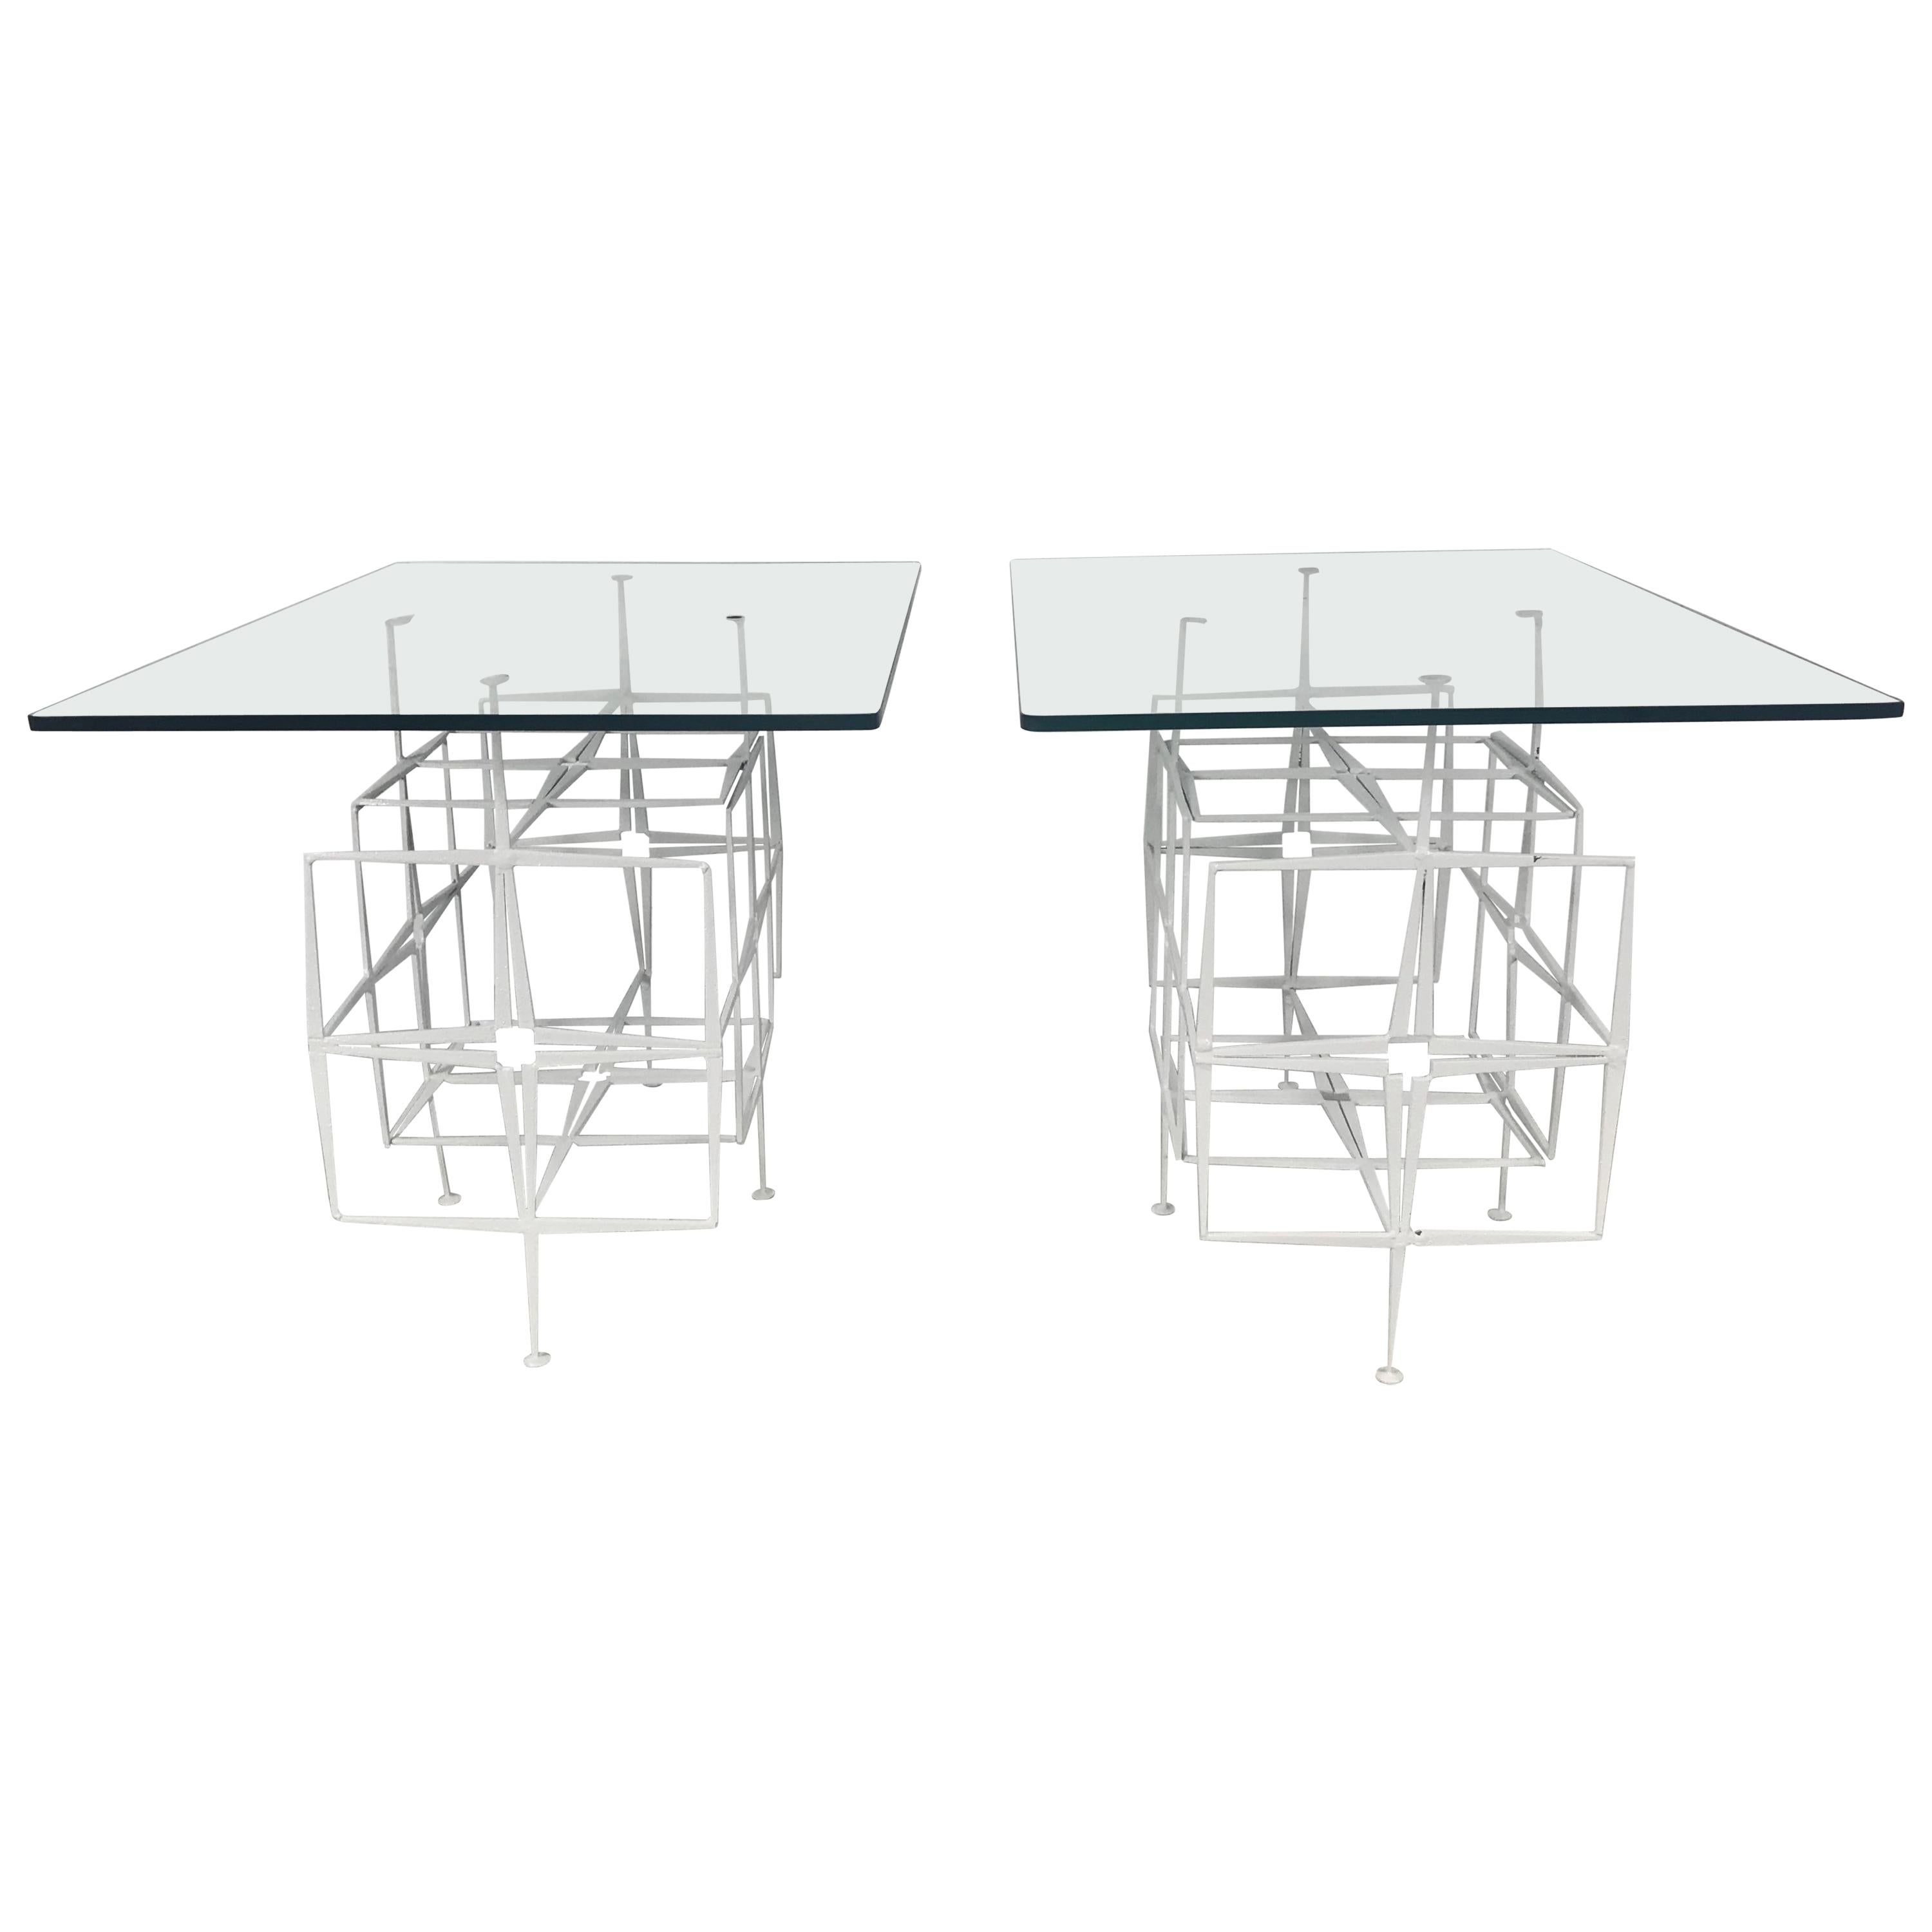 Tri Mark Studios Brutalist Side Tables Manner of Paul Evans, Modernist Design